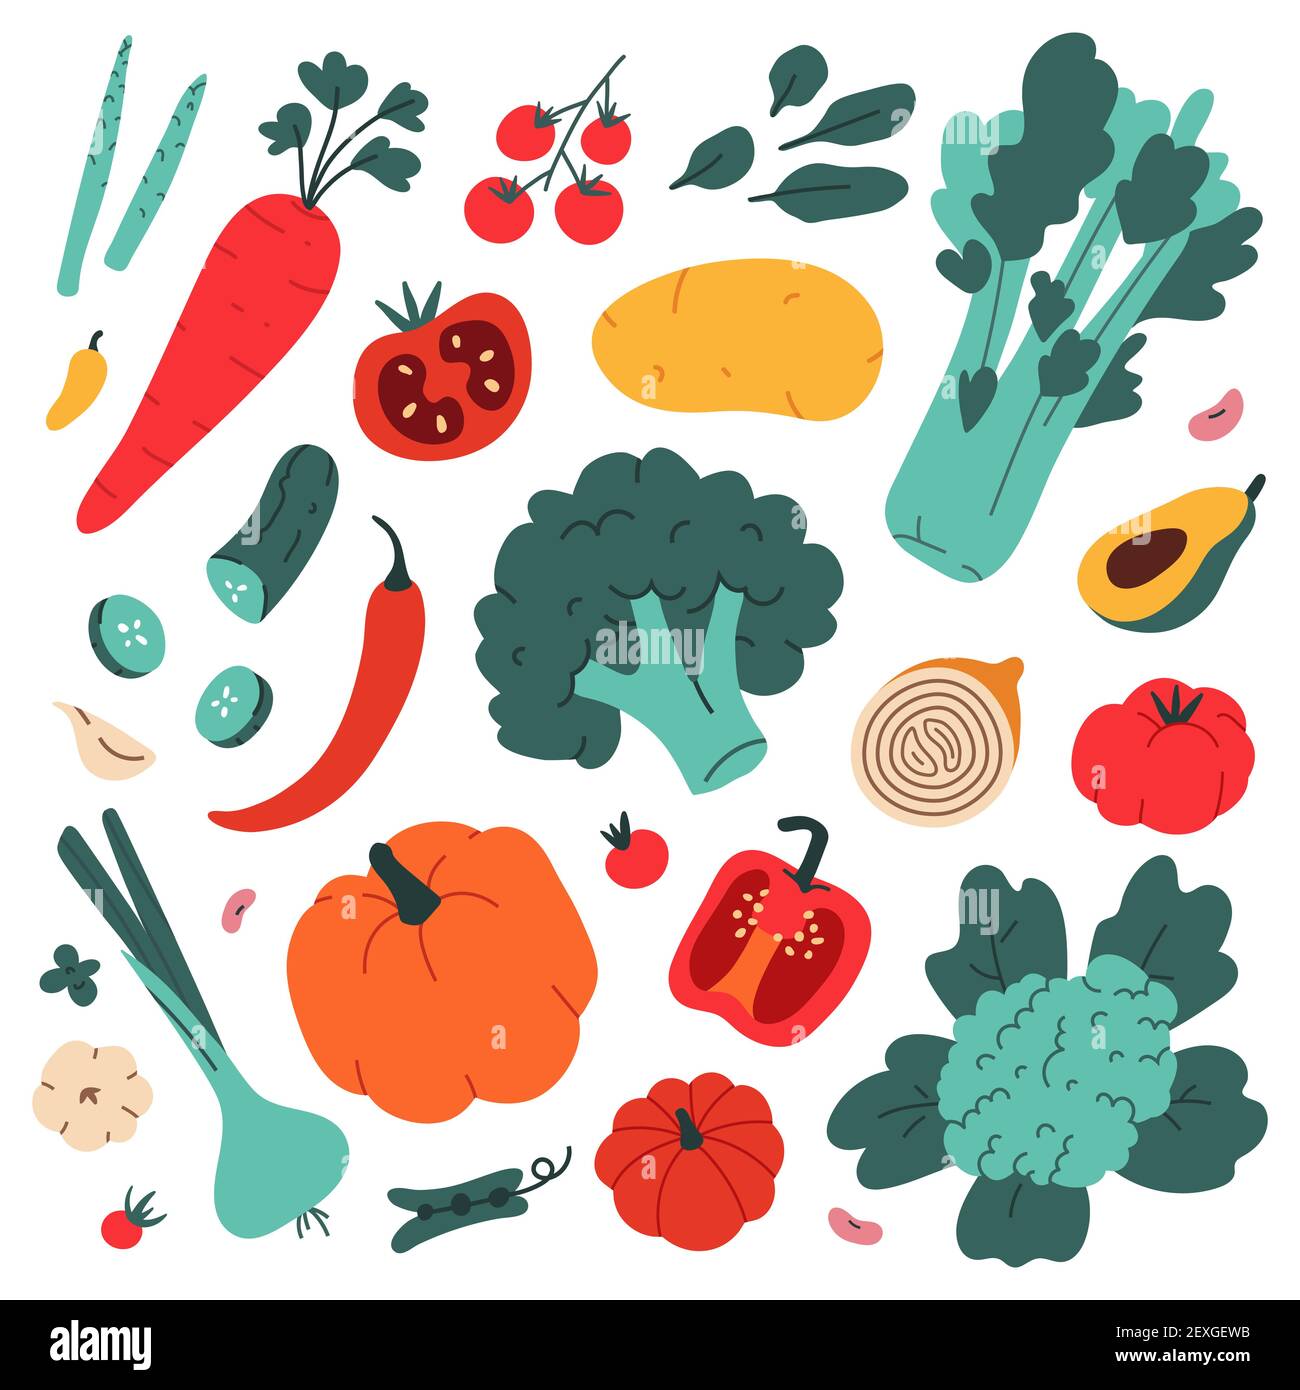 Gemüse Sammlung, Lebensmittel Zutaten, einfache moderne Kunst, Brokkoli, Avocado und Sellerie, Gesunde Ernährung, landwirtschaftliche Früchte, Sammlung von Cliparts Stock Vektor